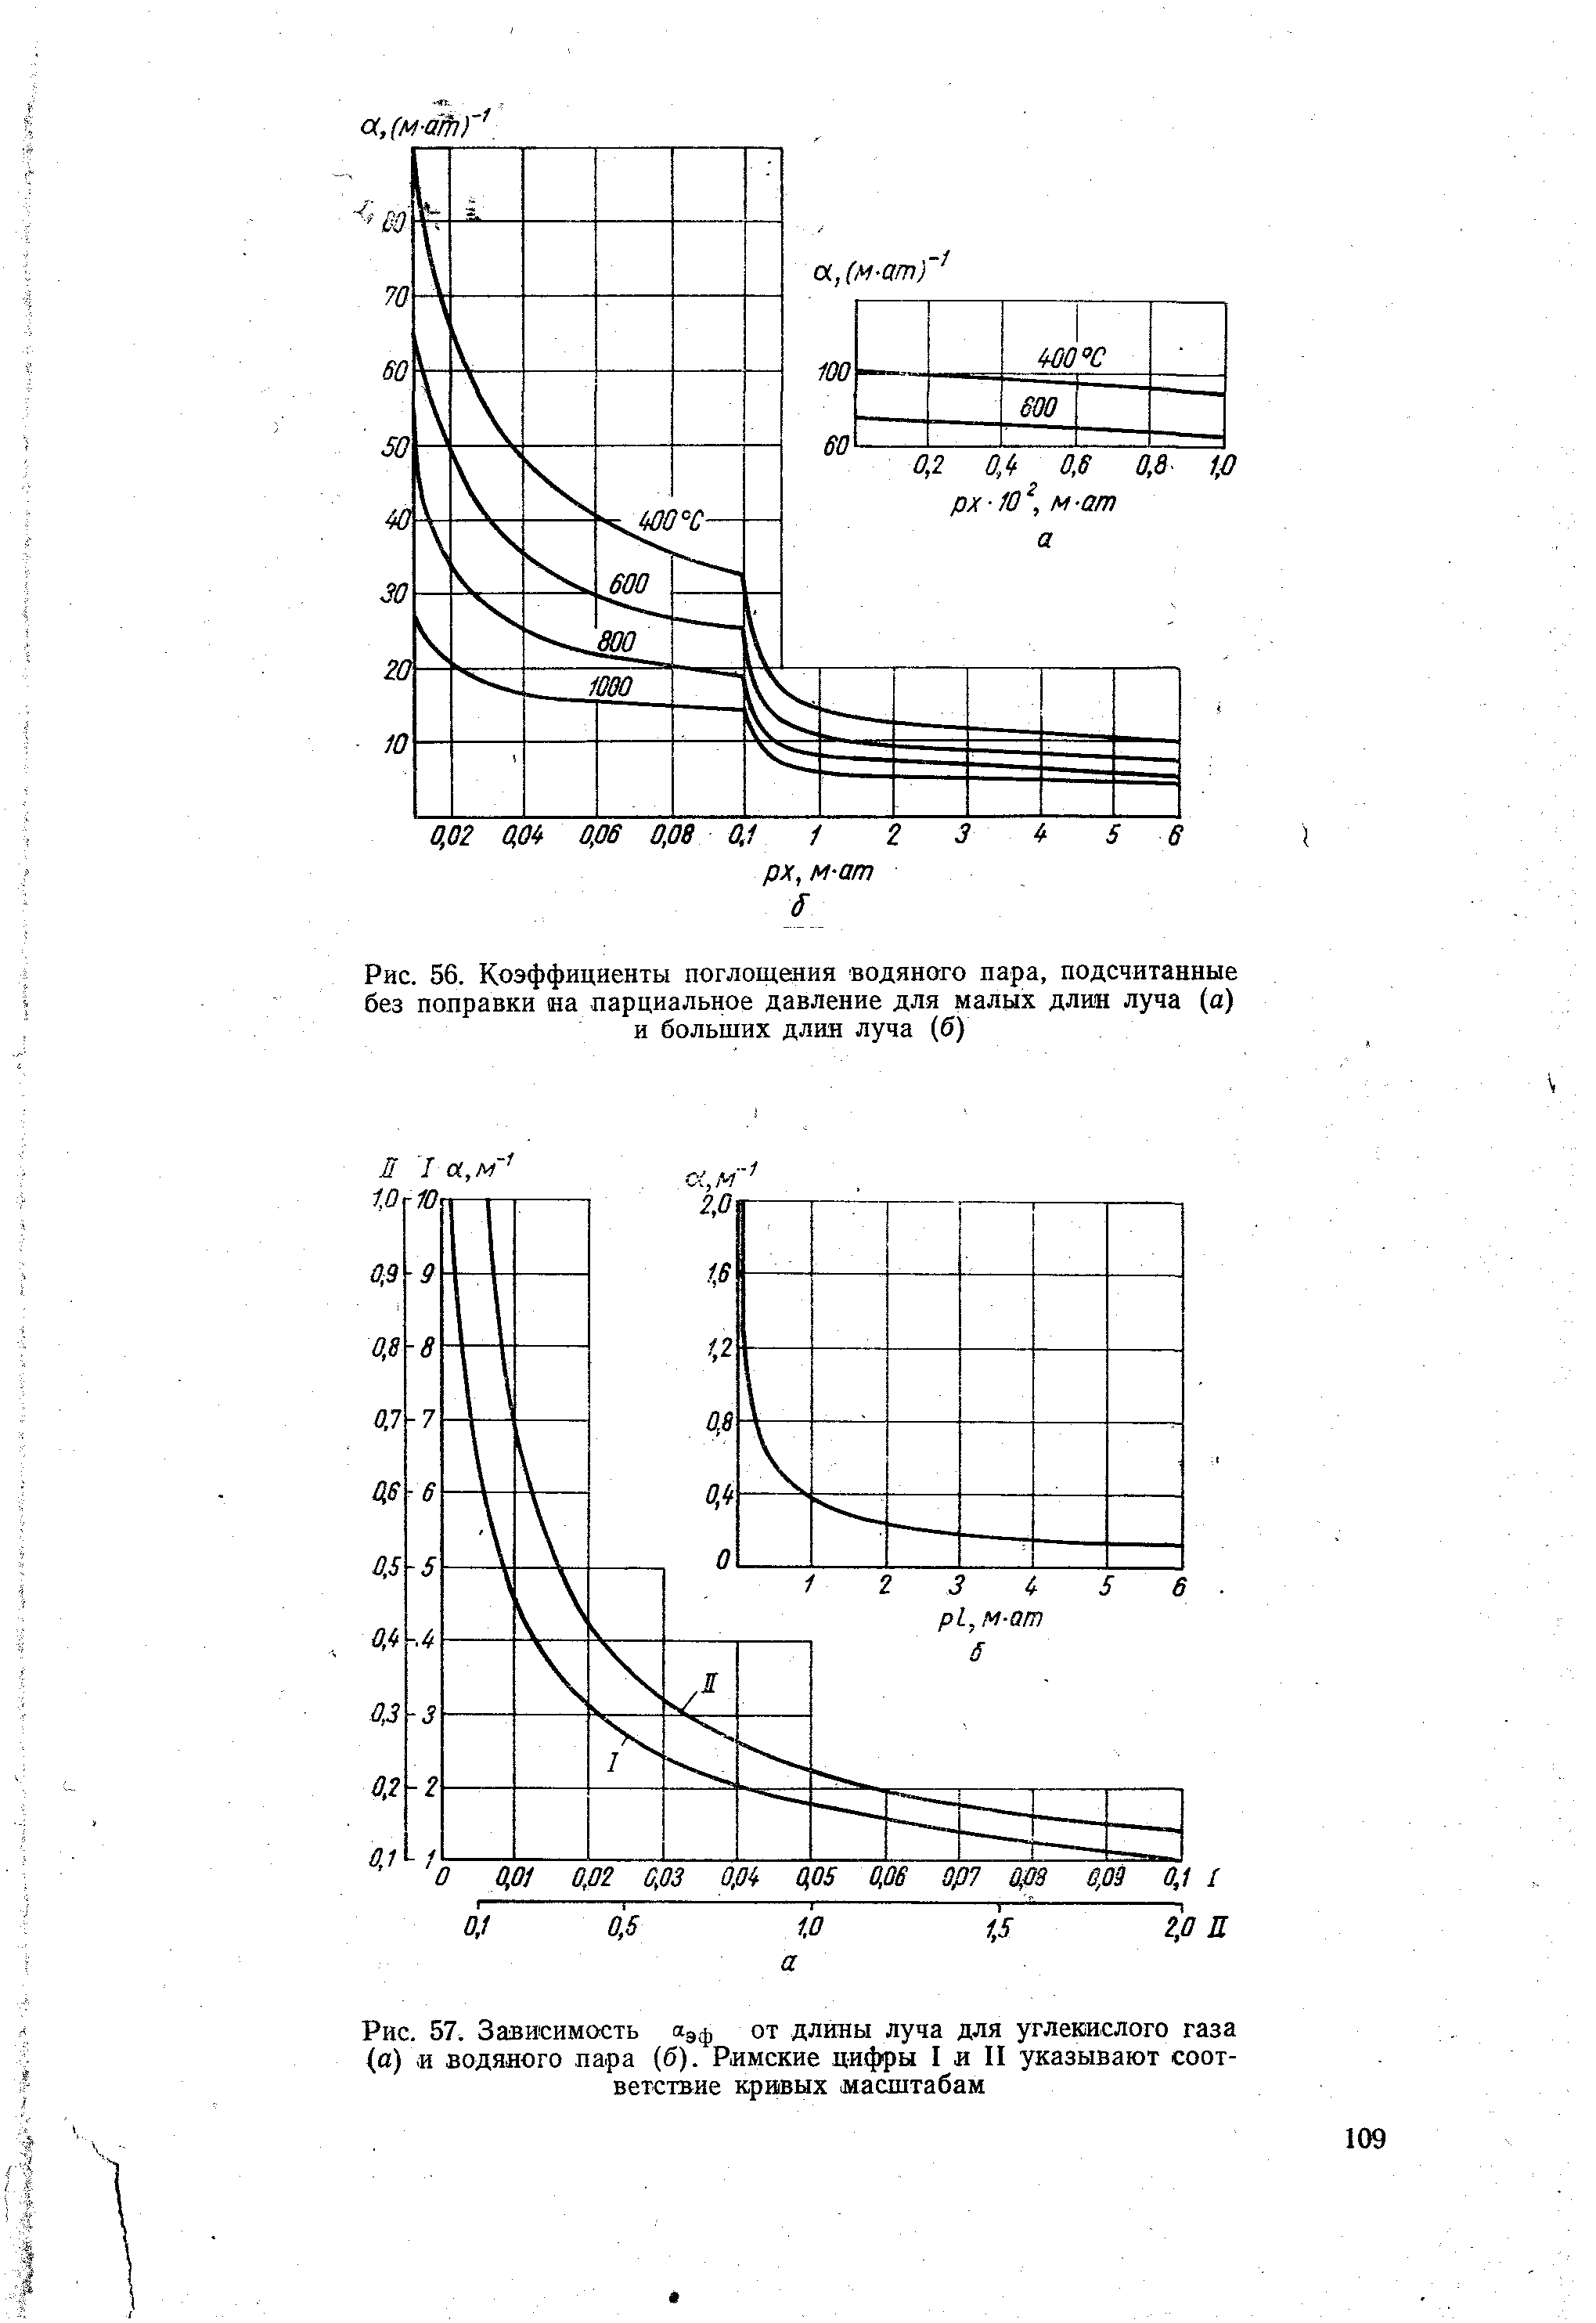 Рис. 57. Зависимость пдф от длины луча для углекислого газа (а) (И водяного пара (б). Римские цифры I и II указывают соответствие кривых масштабам
